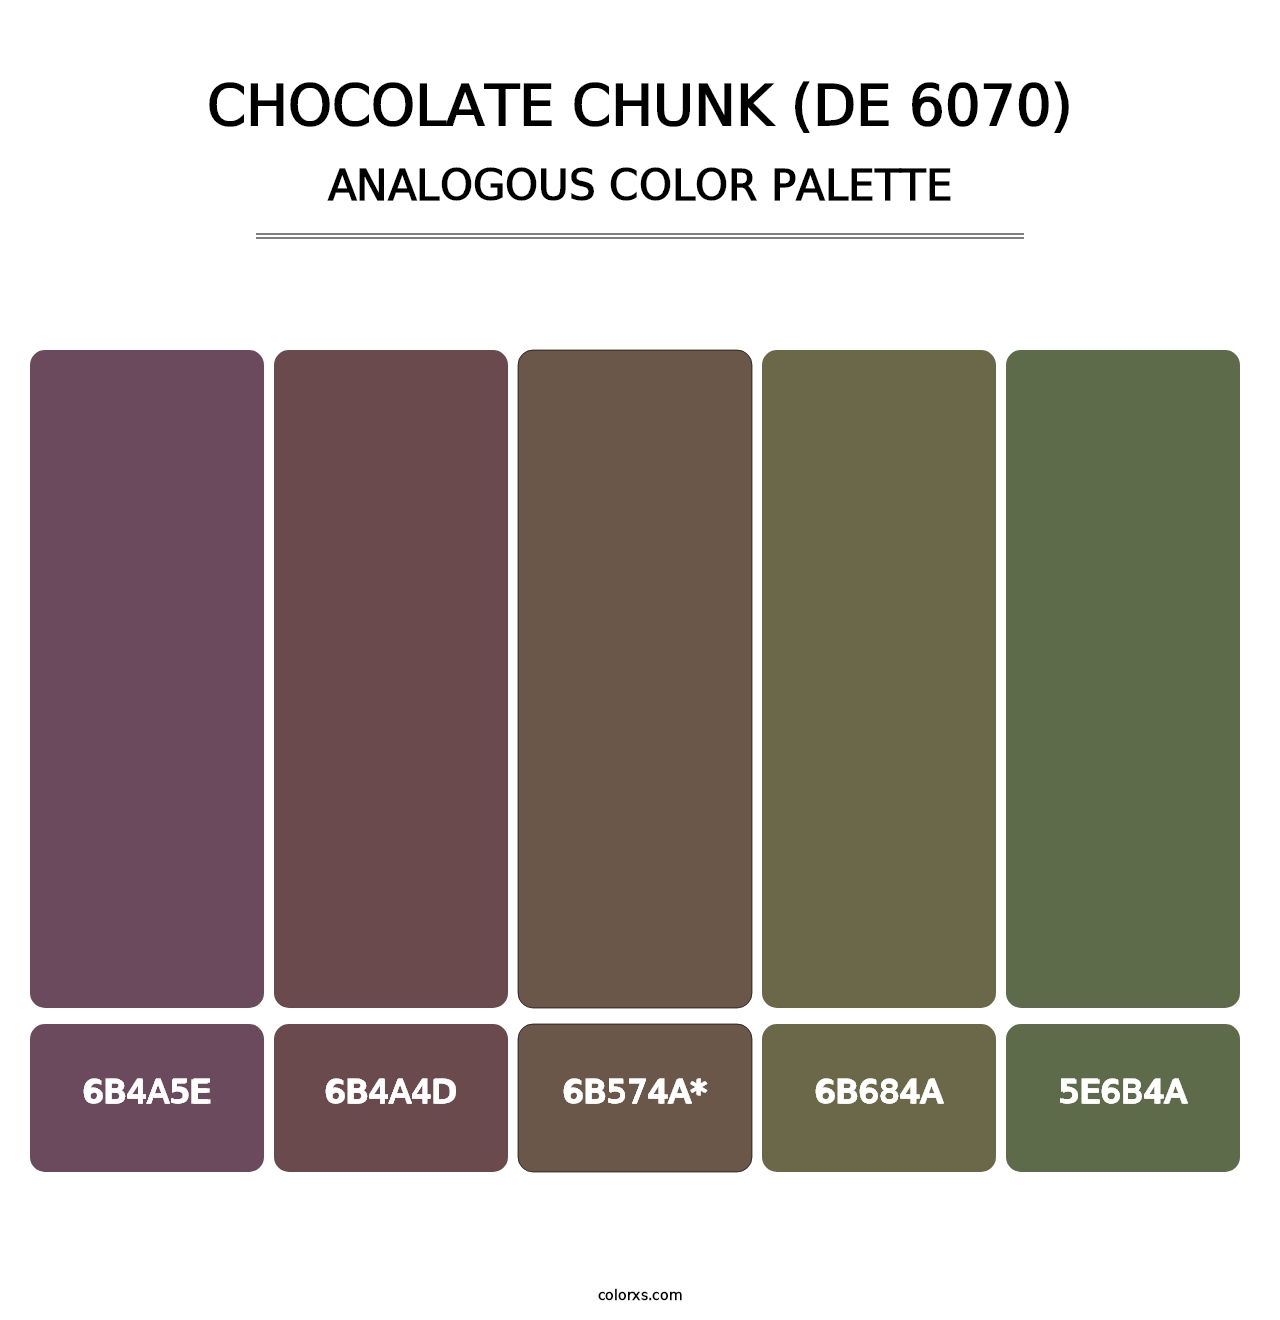 Chocolate Chunk (DE 6070) - Analogous Color Palette